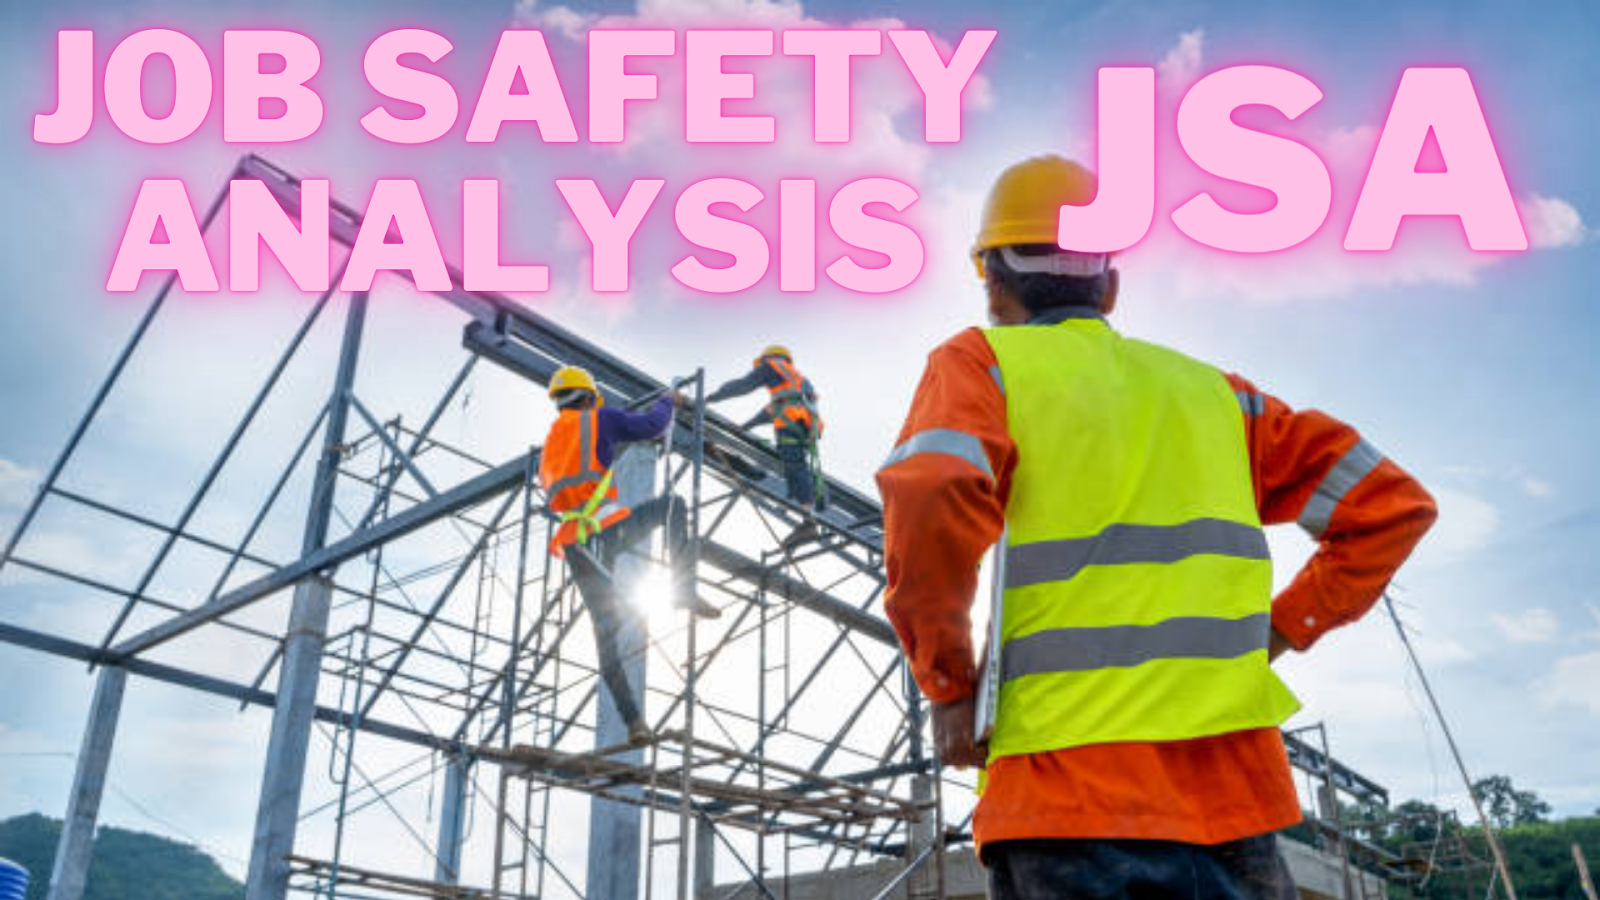 Download 170 Job Safety Analysis (JSA) templates